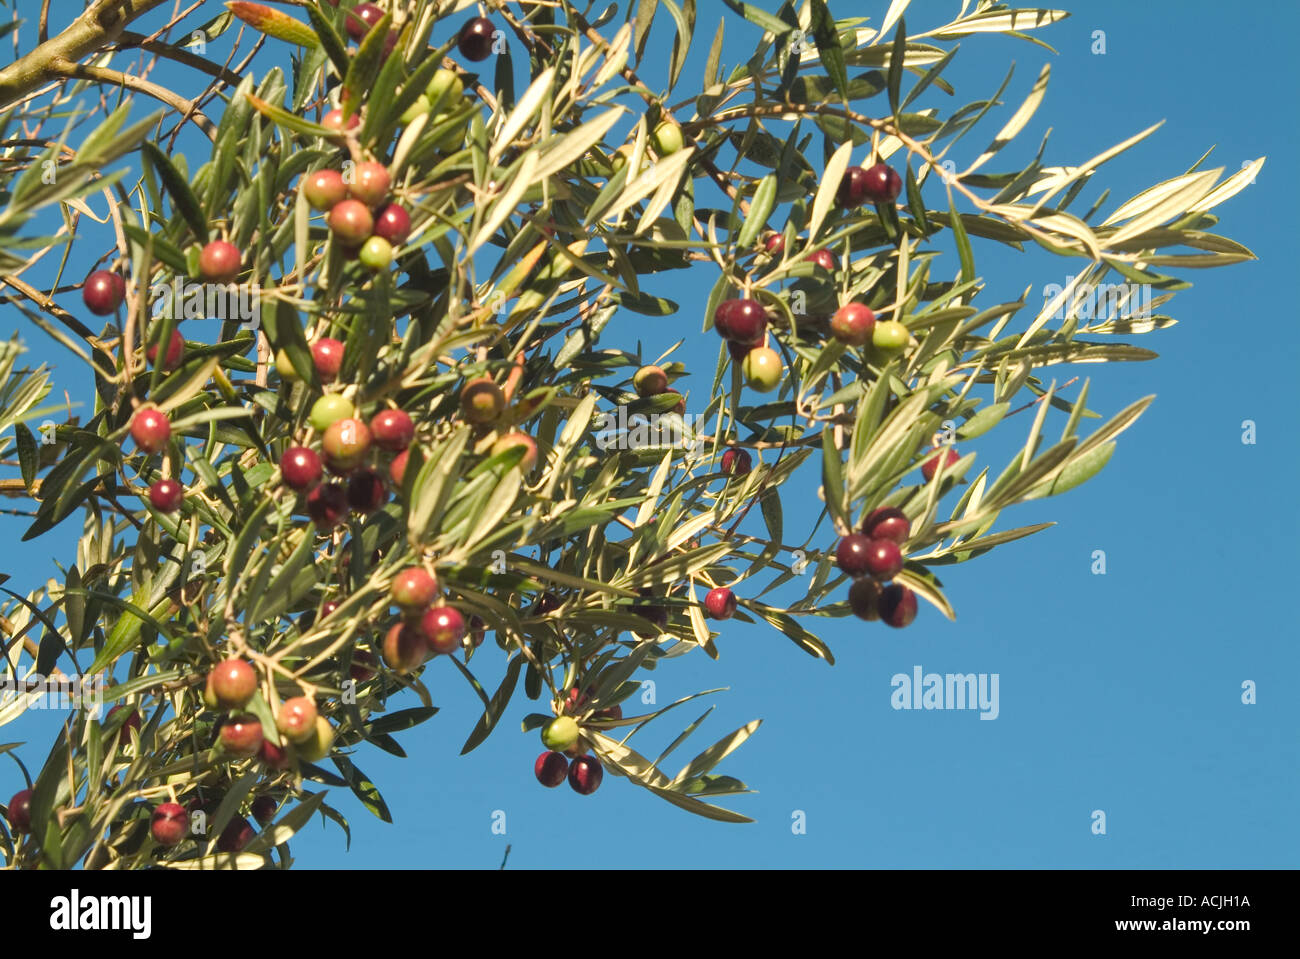 Ripening olives on tree Stock Photo